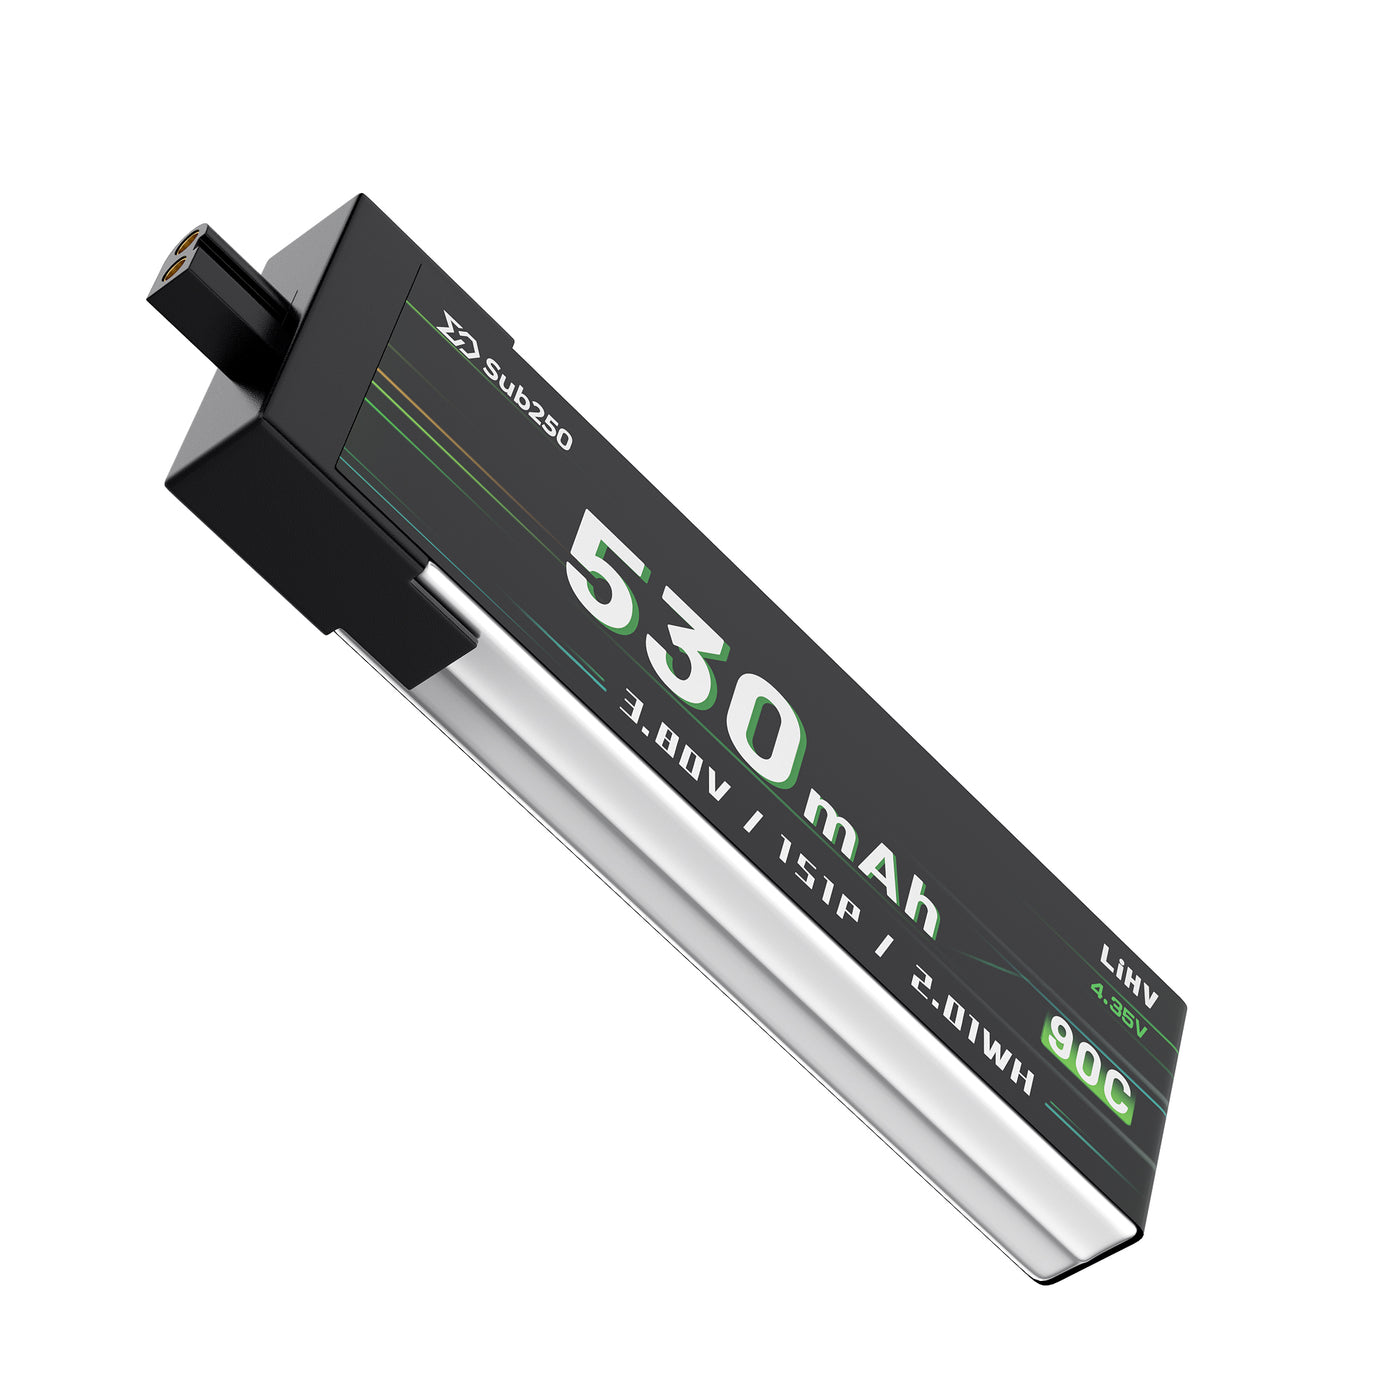 Sub250 1S 530mAh 90C Battery  A30 for whoopfly16/ Nanofly20 （2PCS/6PCS of Pack）